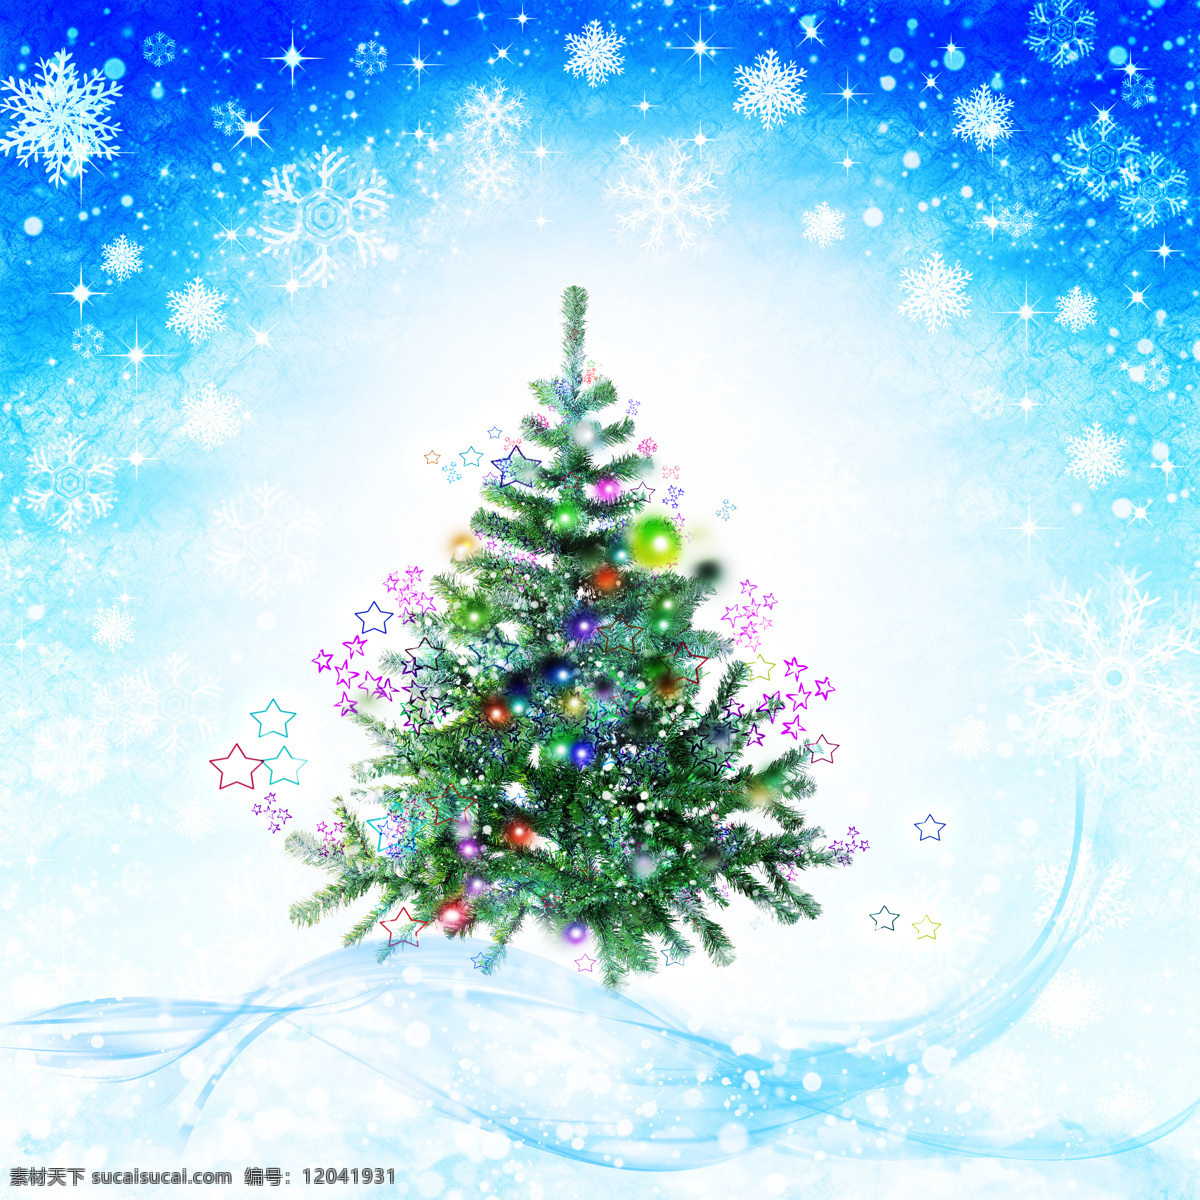 圣诞背景 星星 雪花 蓝色背景 圣诞树 松树 圣诞 圣诞节 圣诞快乐 梦幻背景 节日 节日庆祝 文化艺术